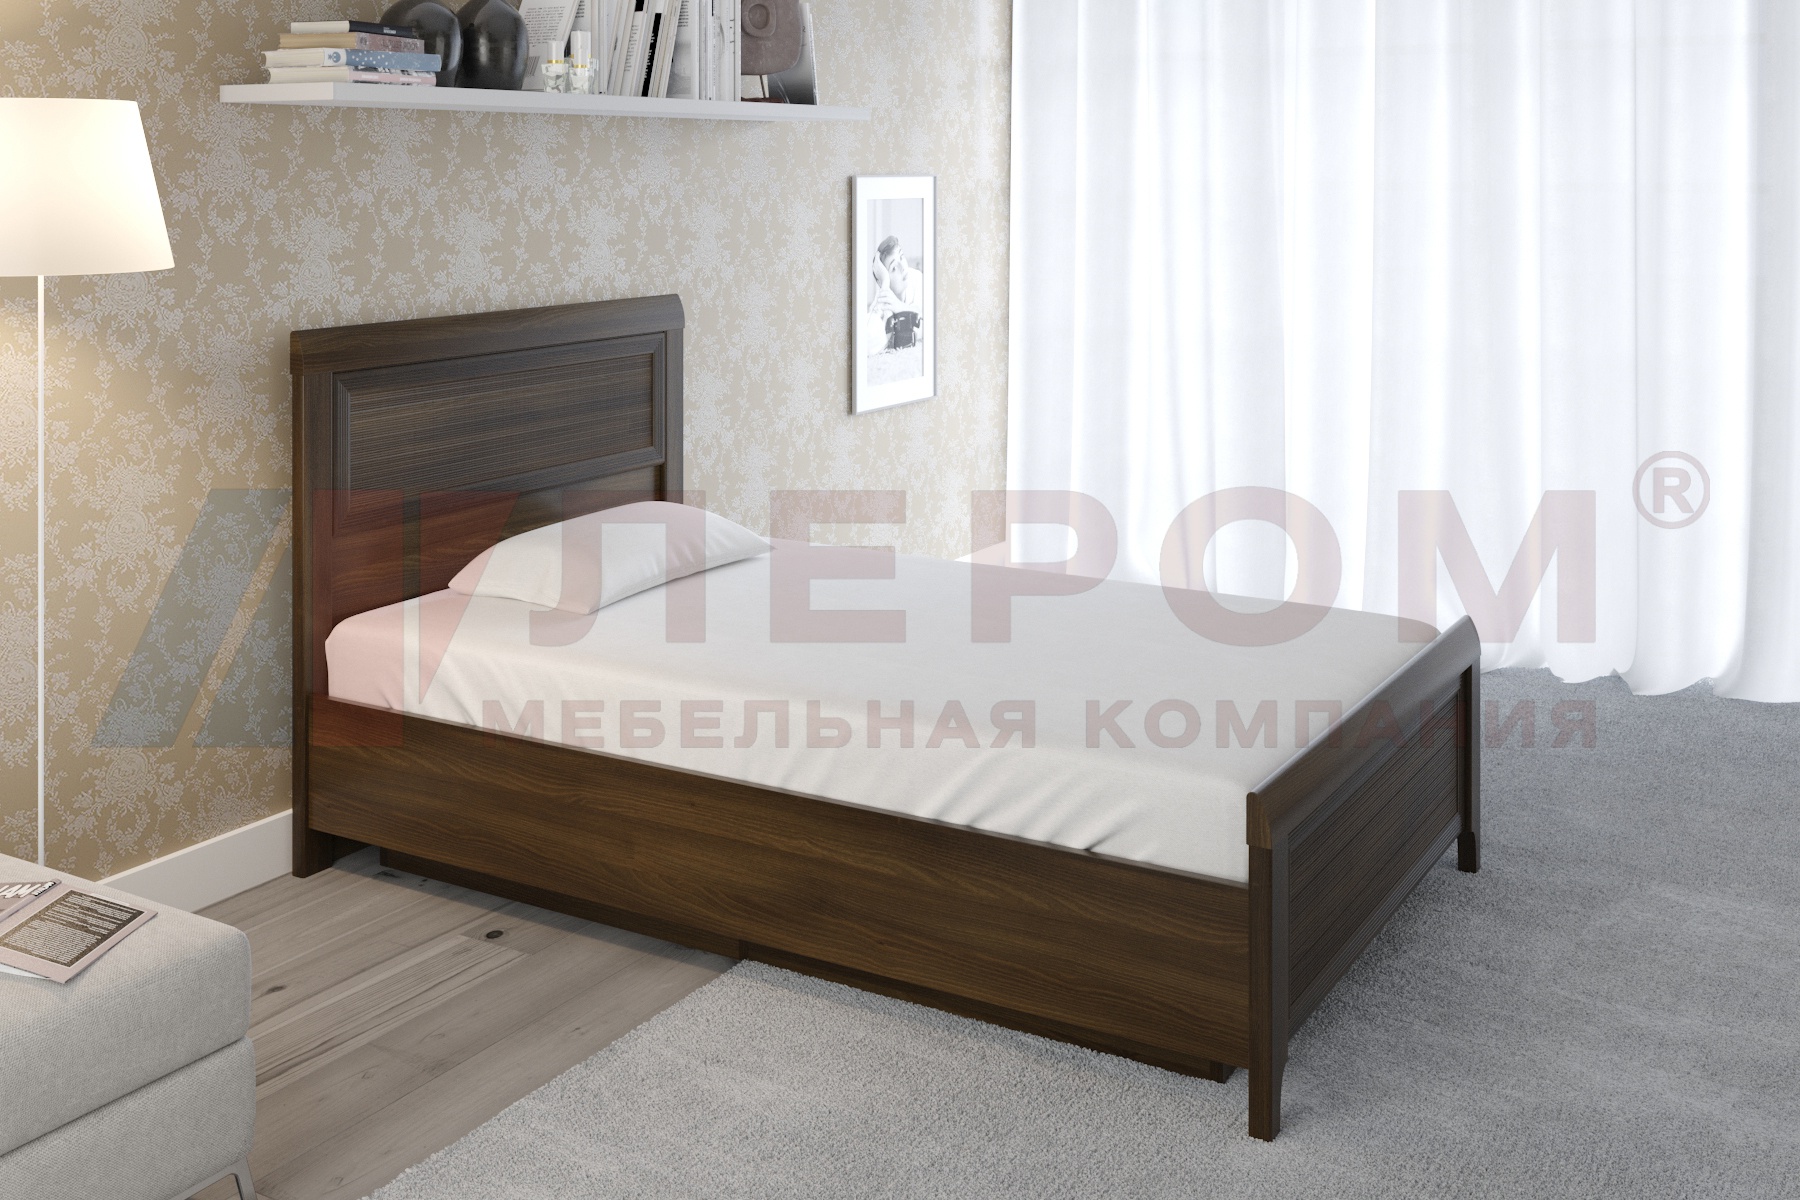 КР-1022 кровать (1,4*2,0)